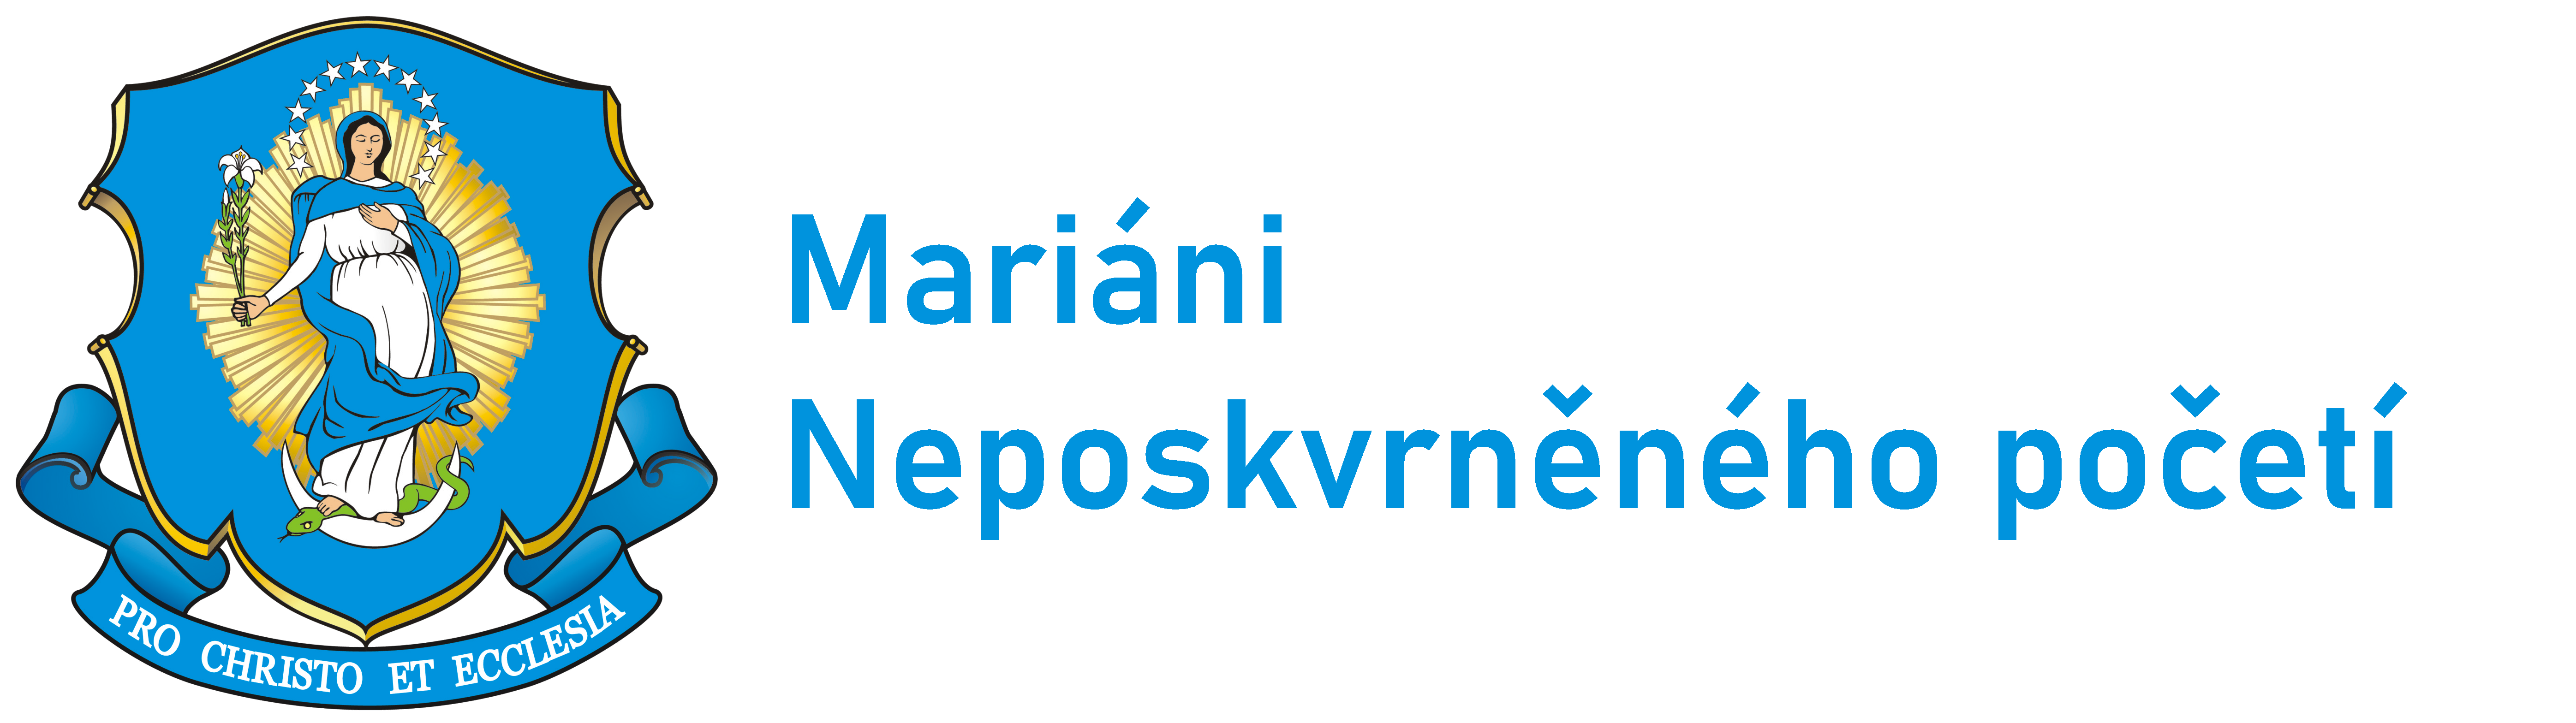 Logo Zakladatel - Mariáni ČR